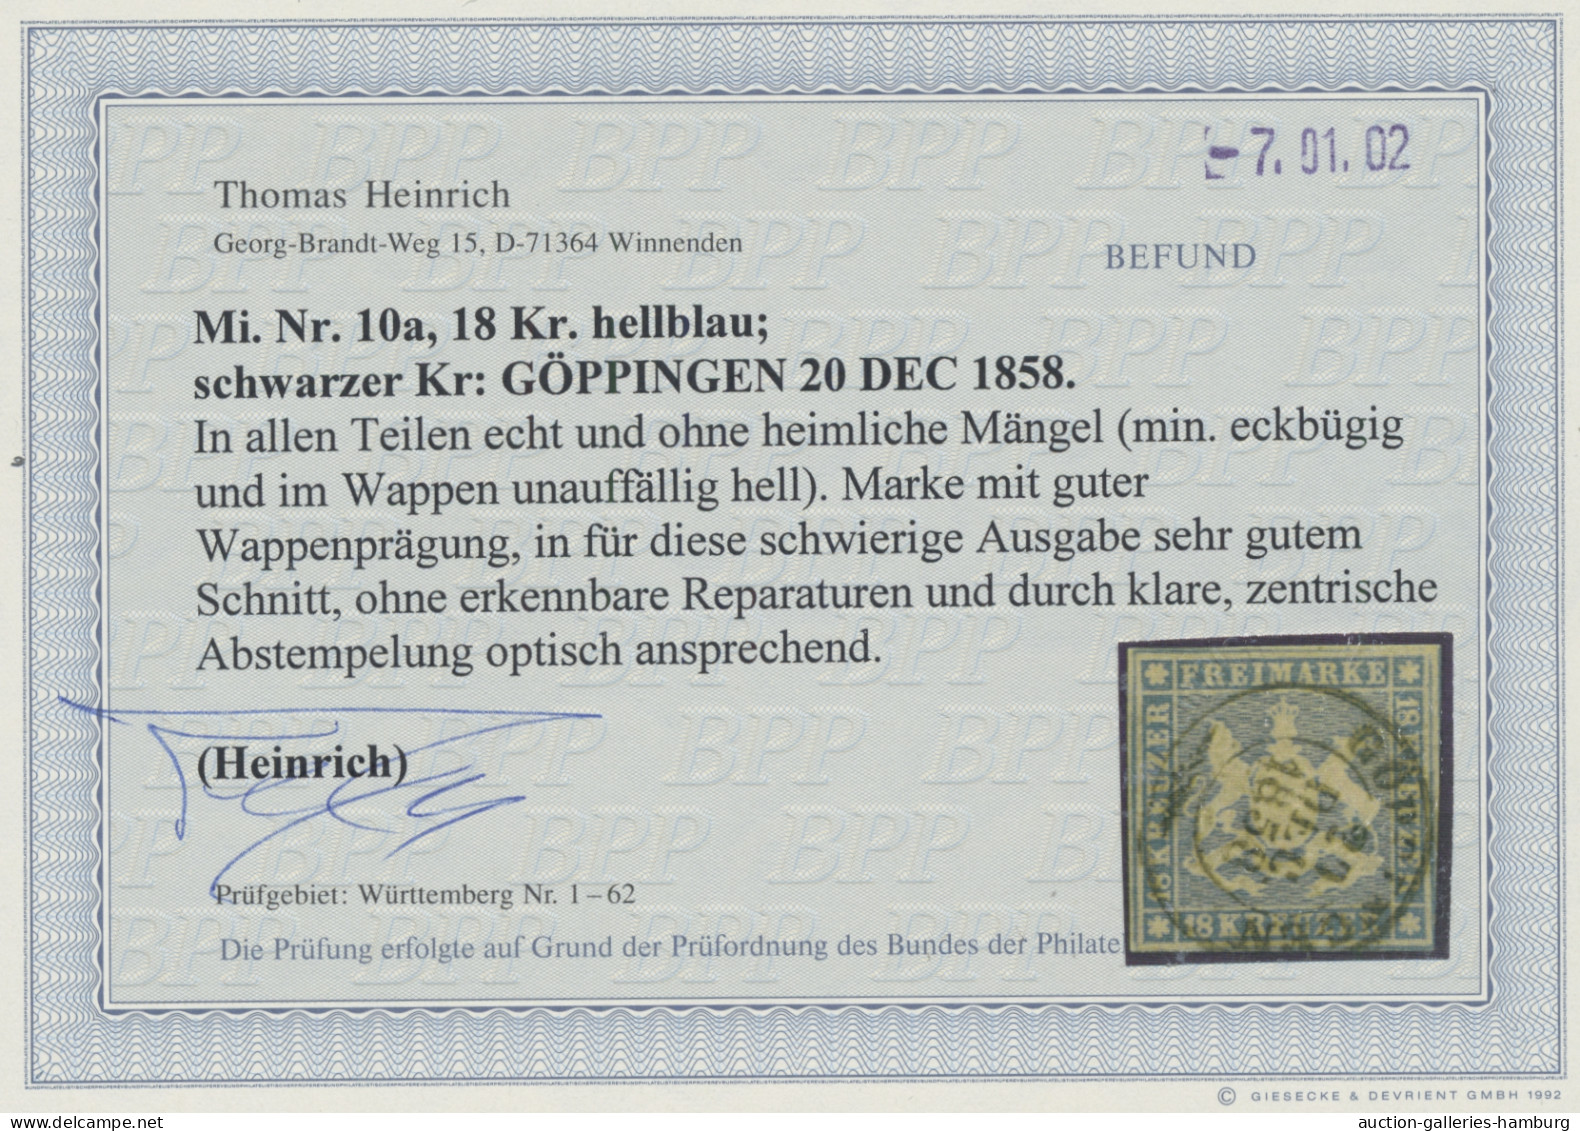 Württemberg - Marken und Briefe: 1851-1923, fast komplette, gestempelte Sammlung